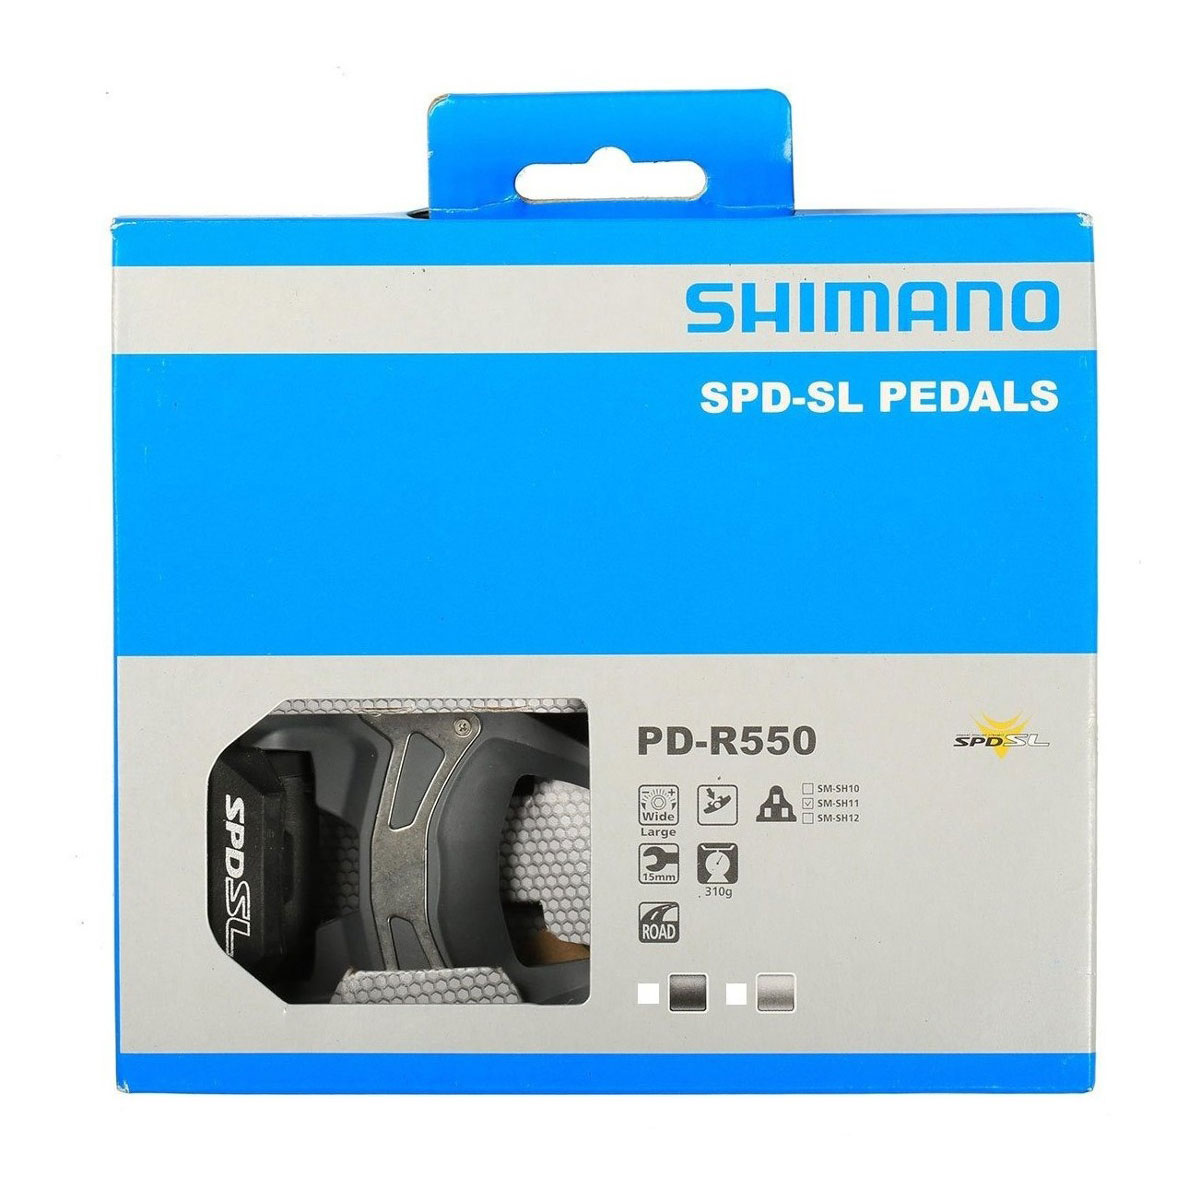 shimano ecuador Pedal de Ruta SHIMANO R550 distribuidores shimano